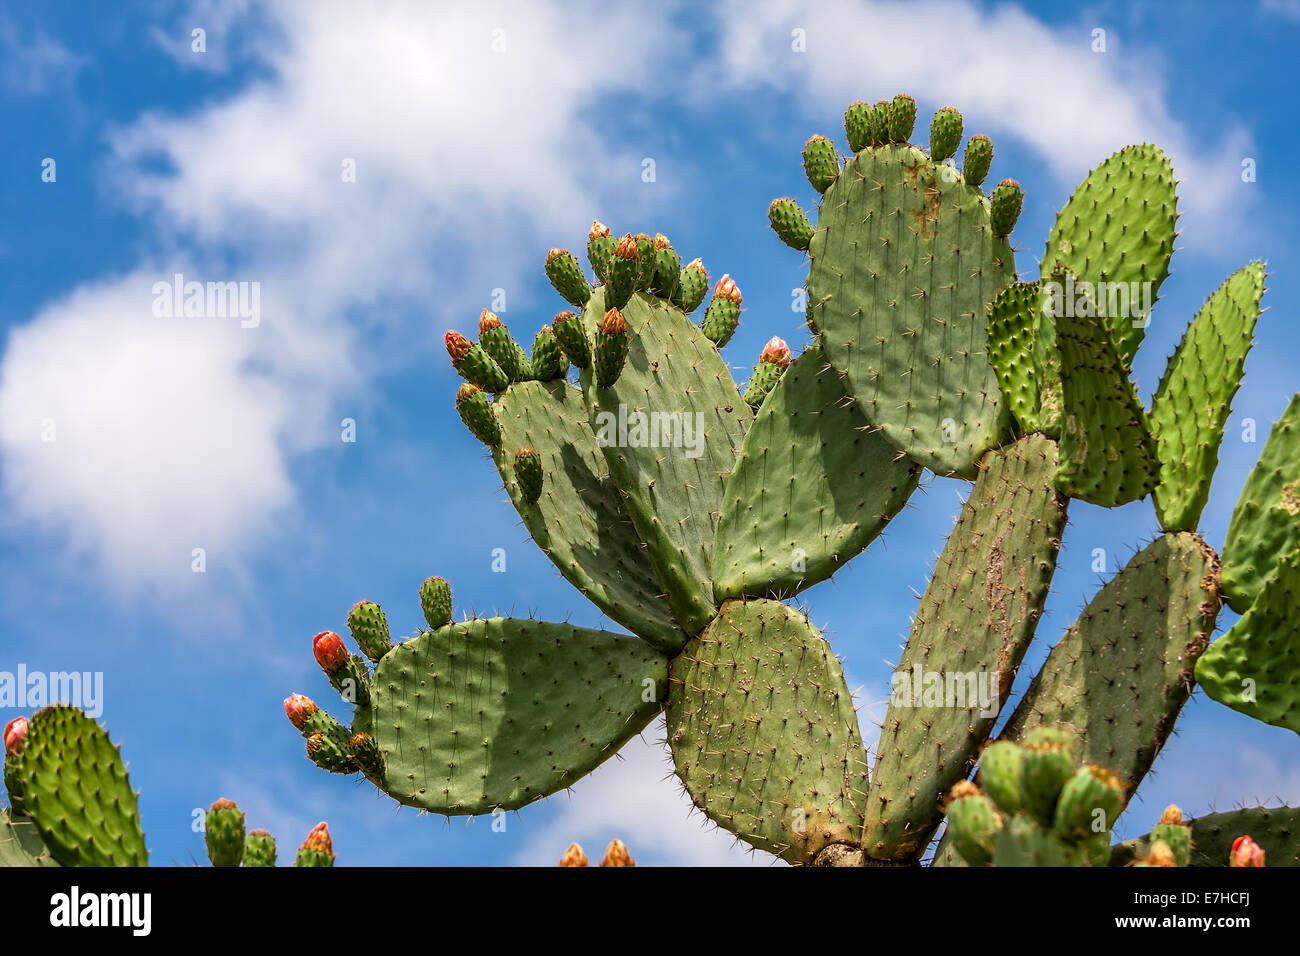 Verde e piatta arrotondata cladodi di Opuntia cactus con boccioli contro il cielo blu con nuvole bianche in Israele. Foto Stock